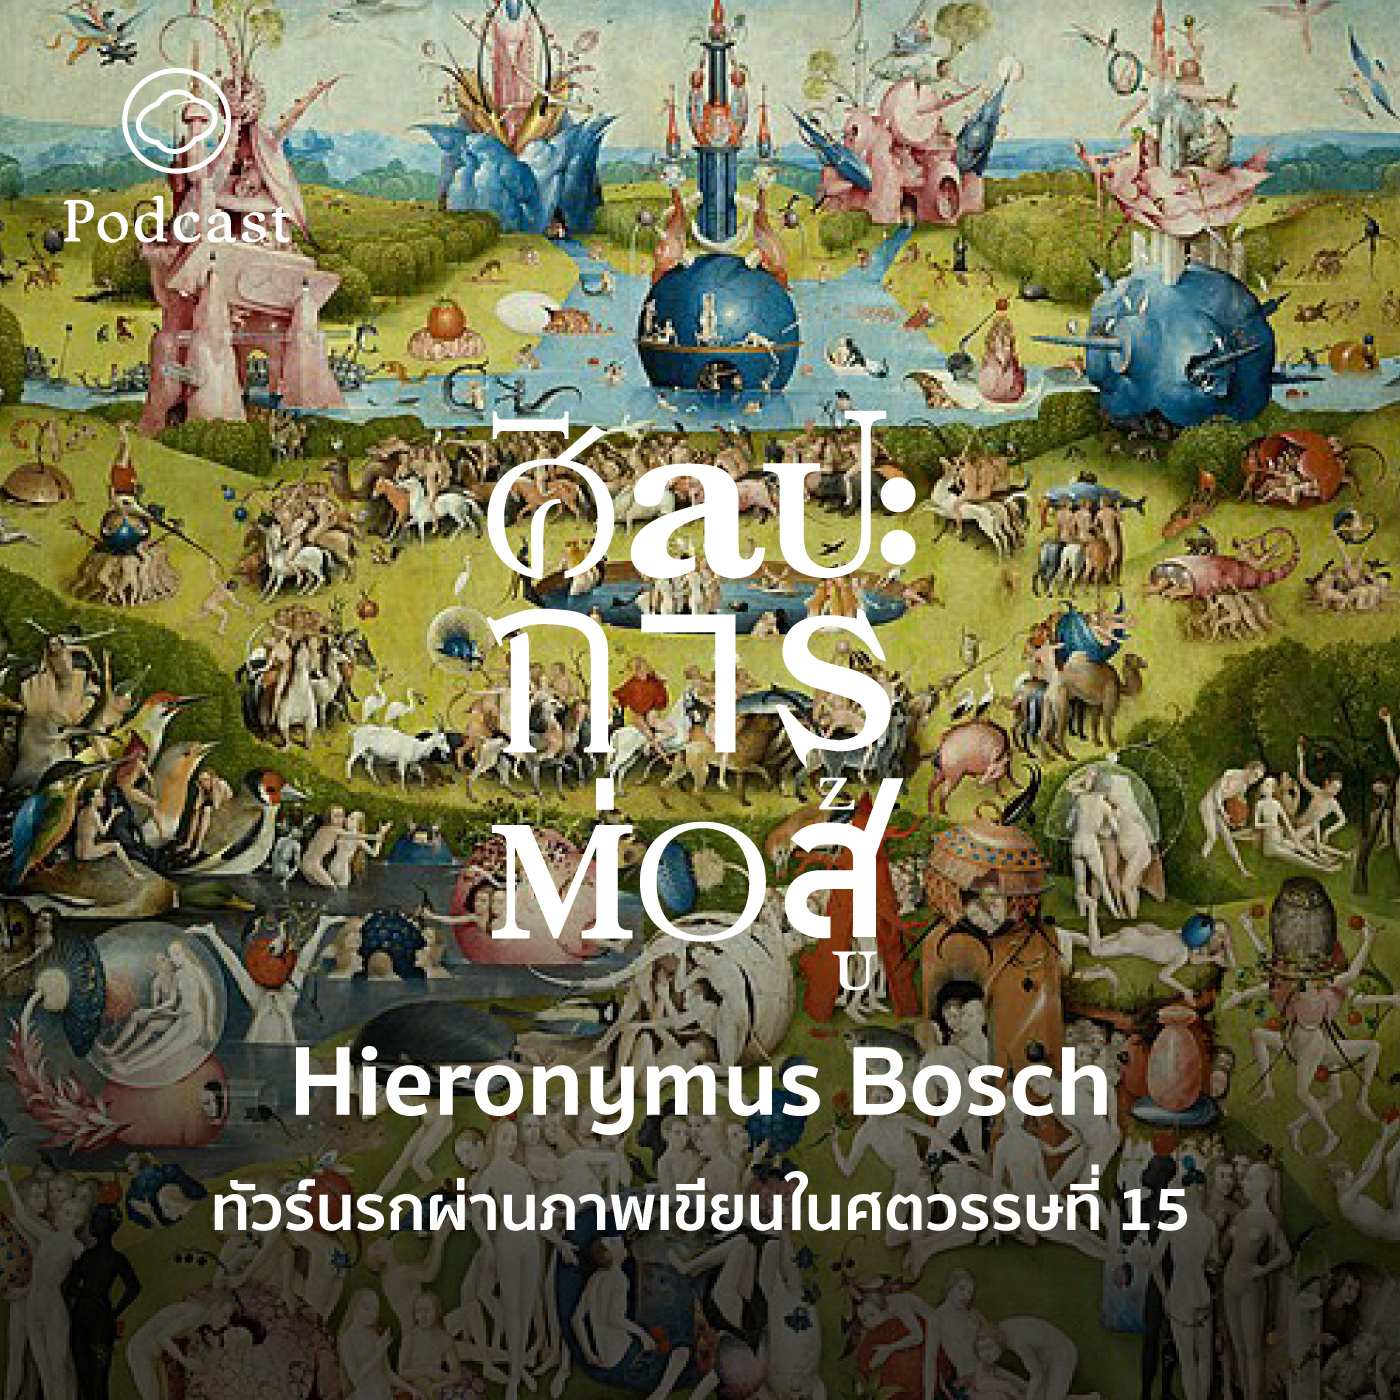 EP. 54 Hieronymus Bosch ทัวร์นรกผ่านภาพเขียนในศตวรรษที่ 15 - The Cloud Podcast